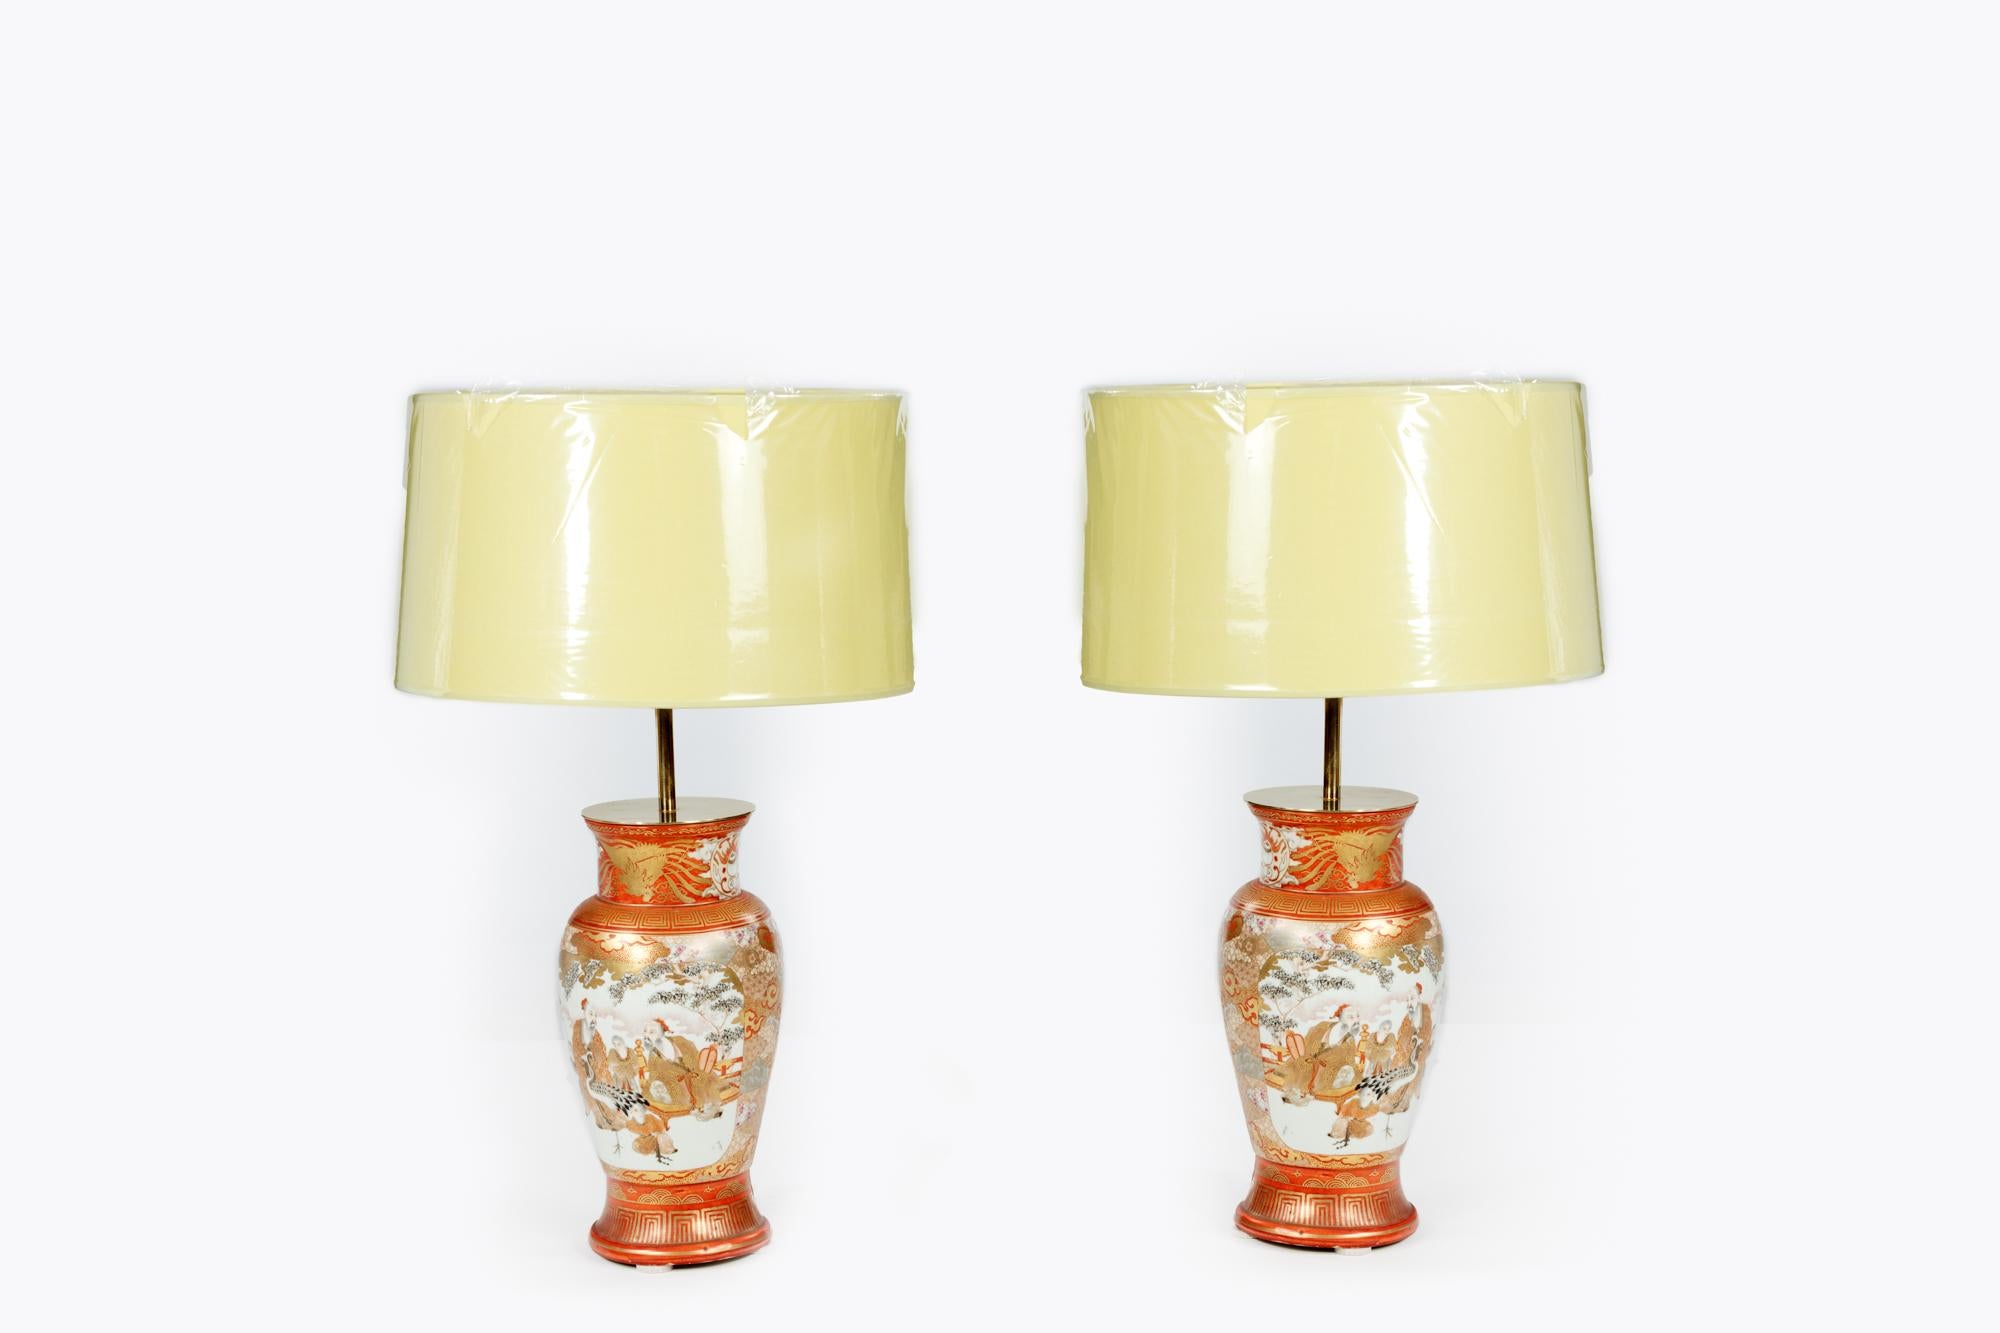 Zwei antike japanische Vasen, die in Tischlampen umgewandelt wurden, komplett mit passenden zeitgenössischen Lampenschirmen. Sie sind nach traditionellem Geschmack dekoriert und weisen geometrische Kartuschen sowohl auf den Rändern als auch auf den